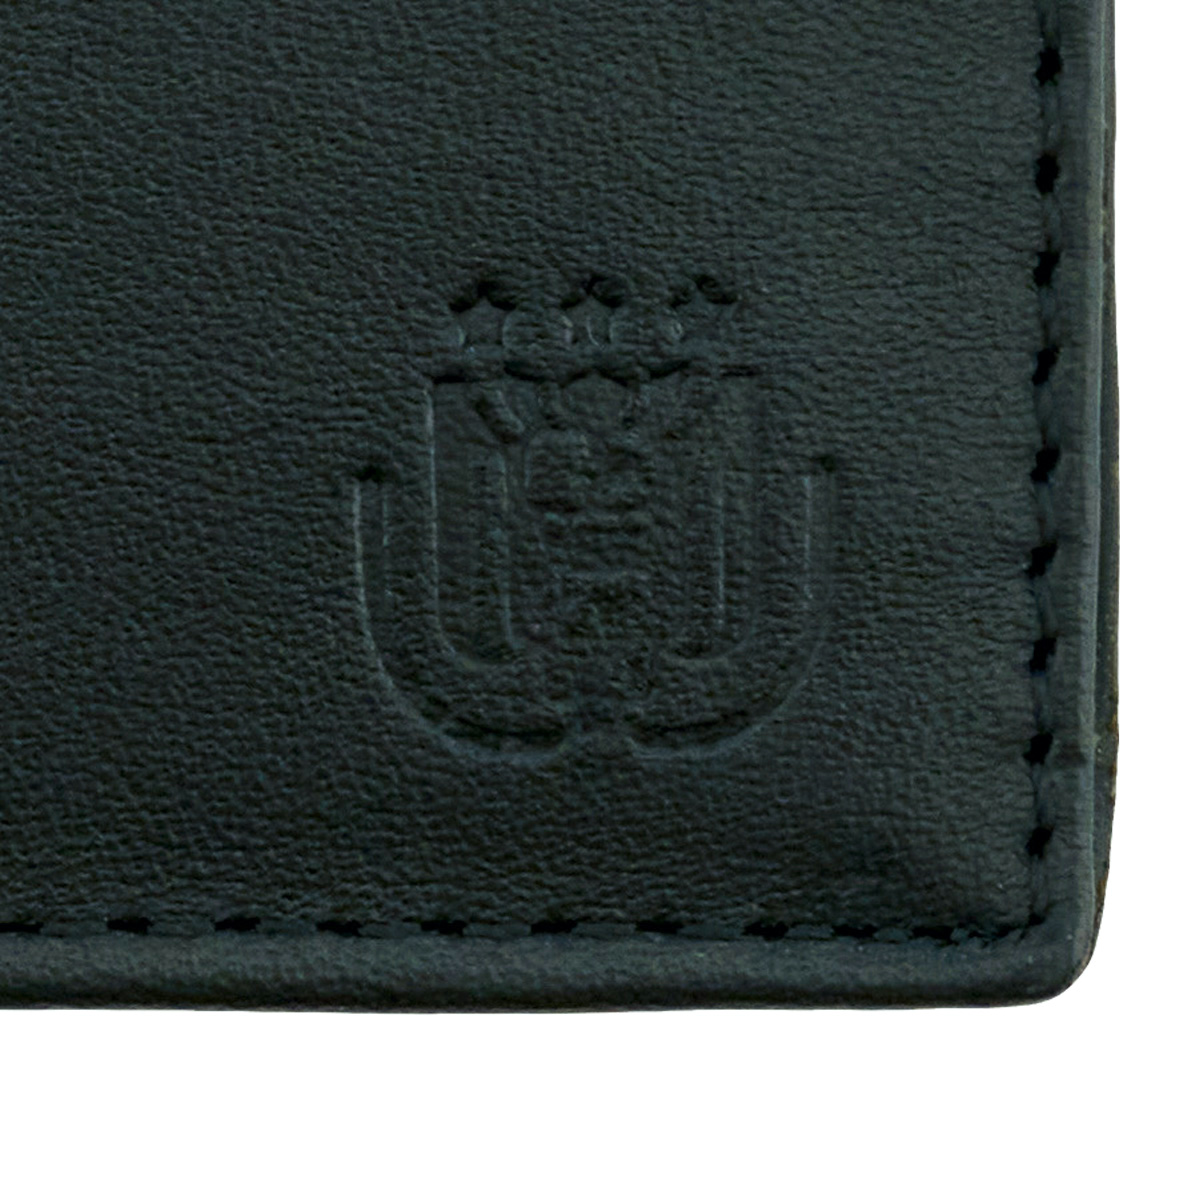 Leather Card Holder - Black